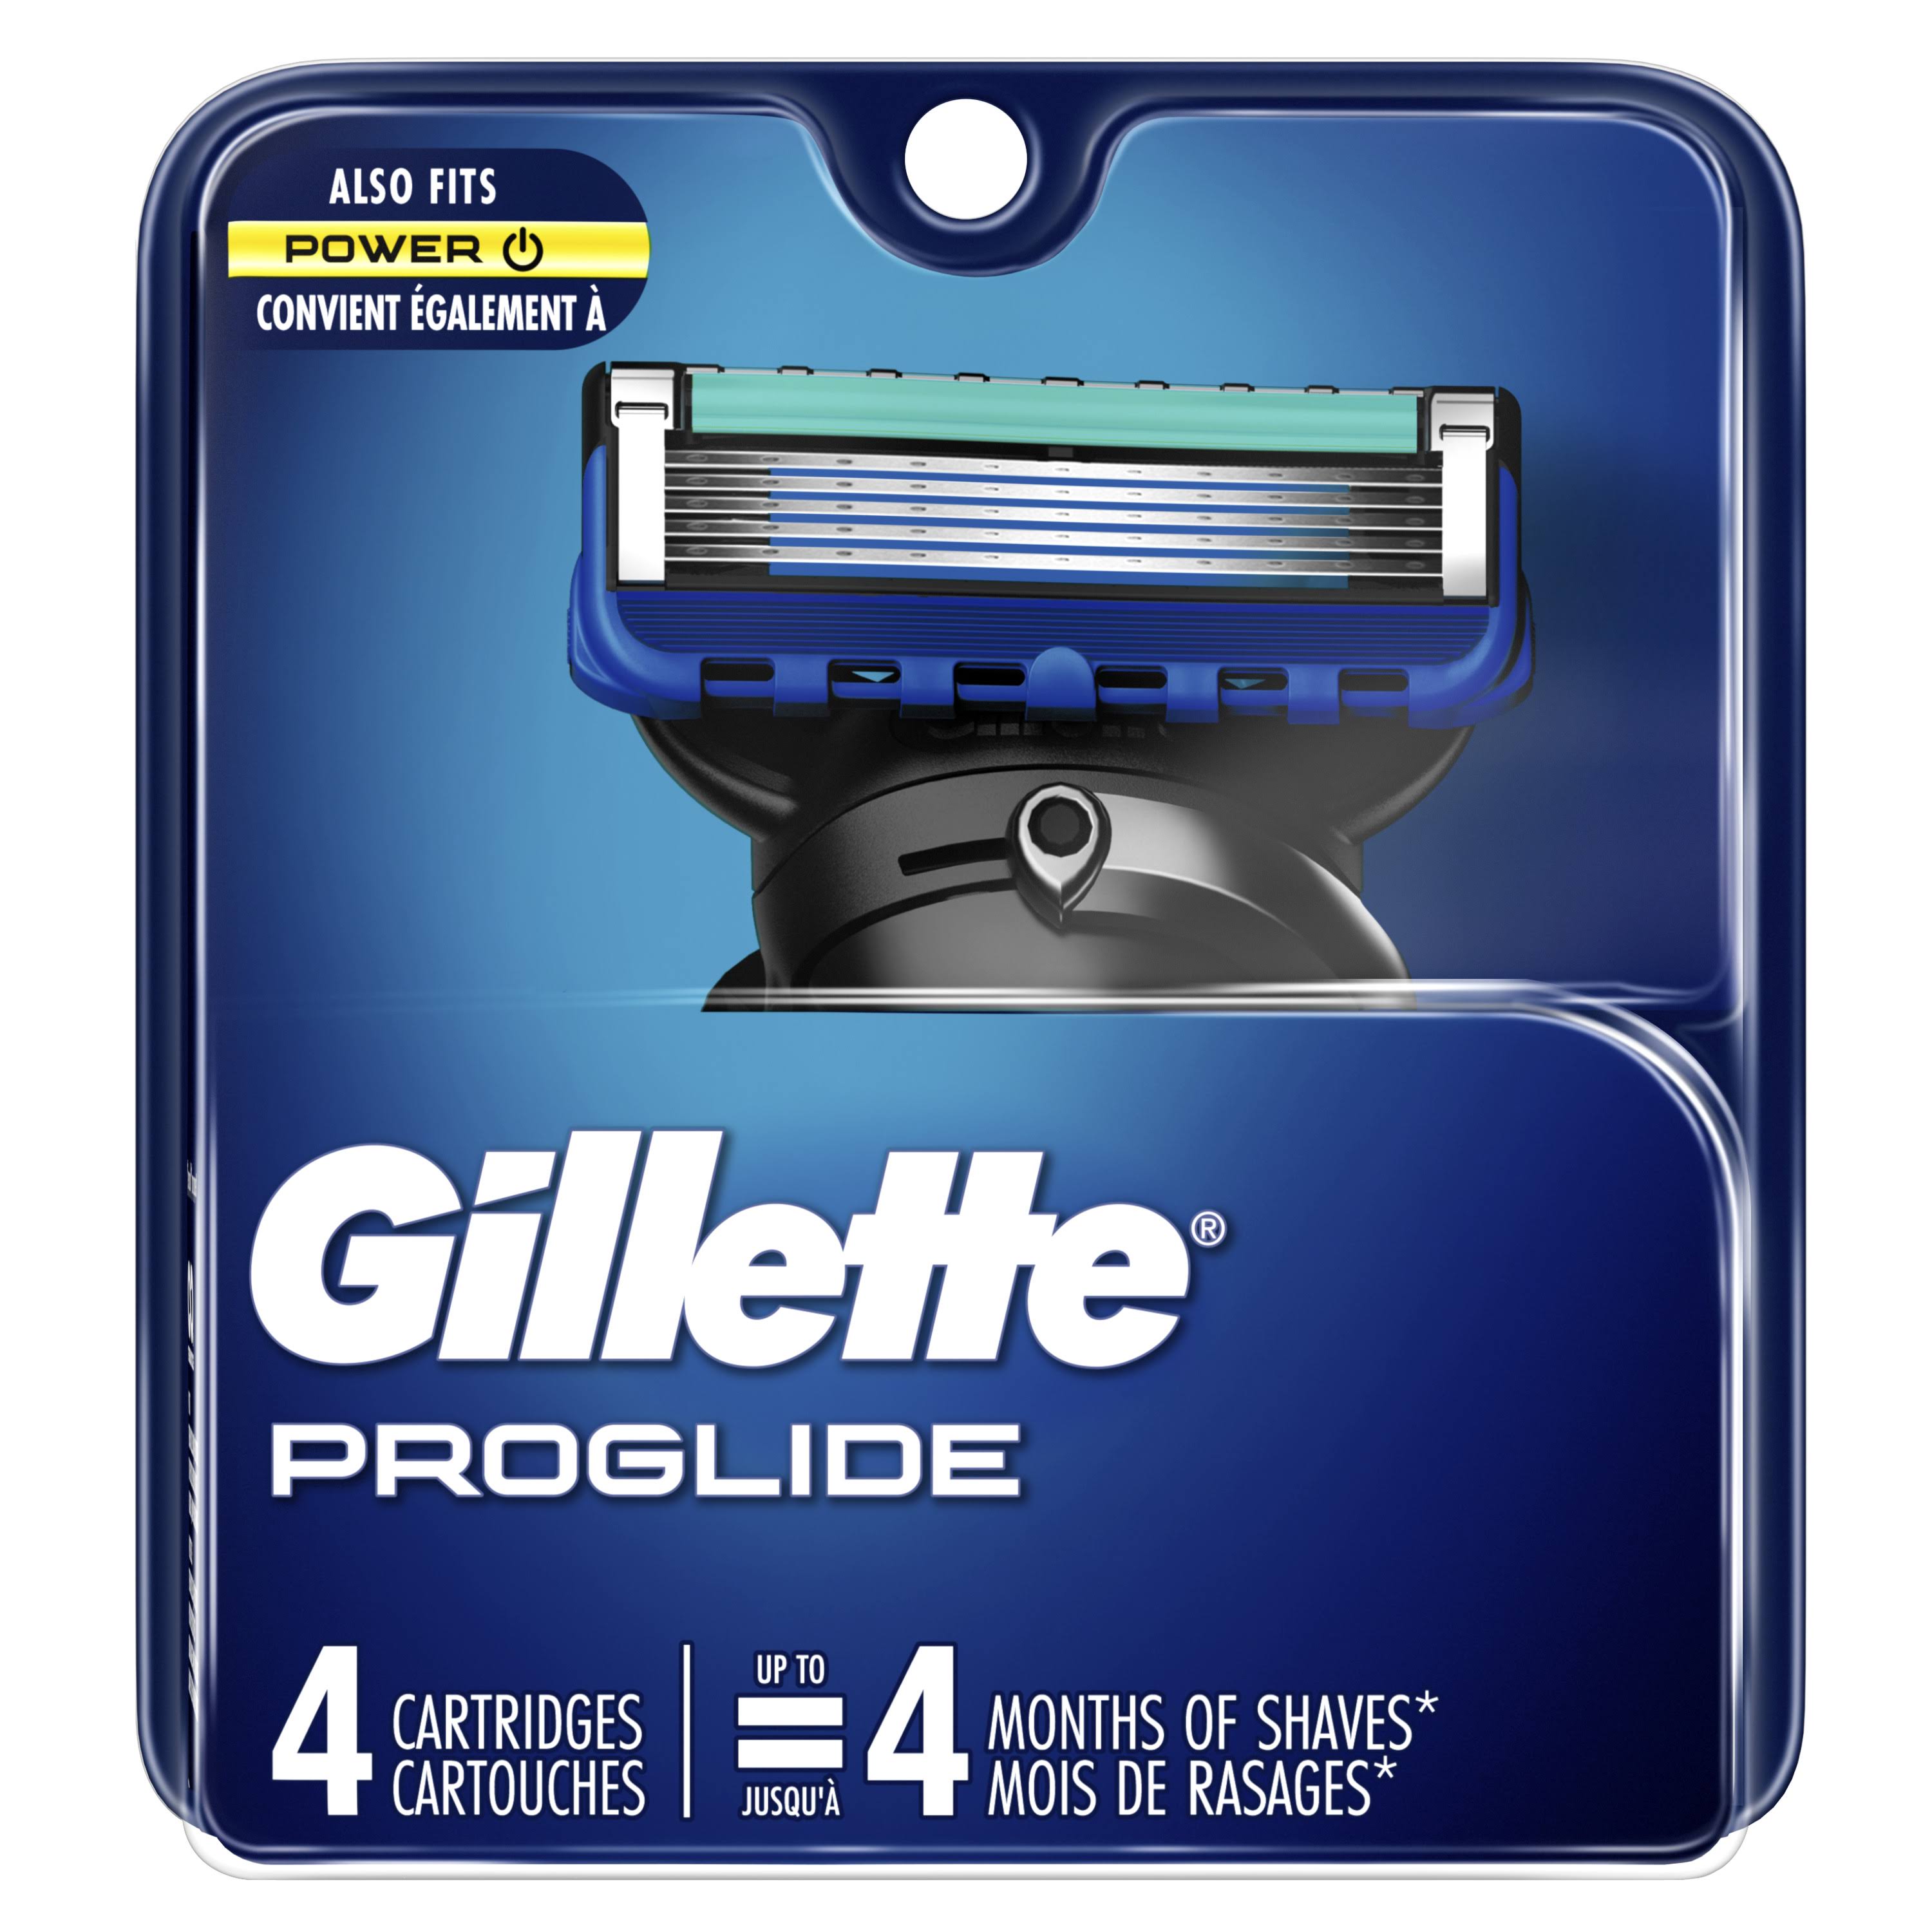 Gillette Fusion Proglide Cartridge - 4ct